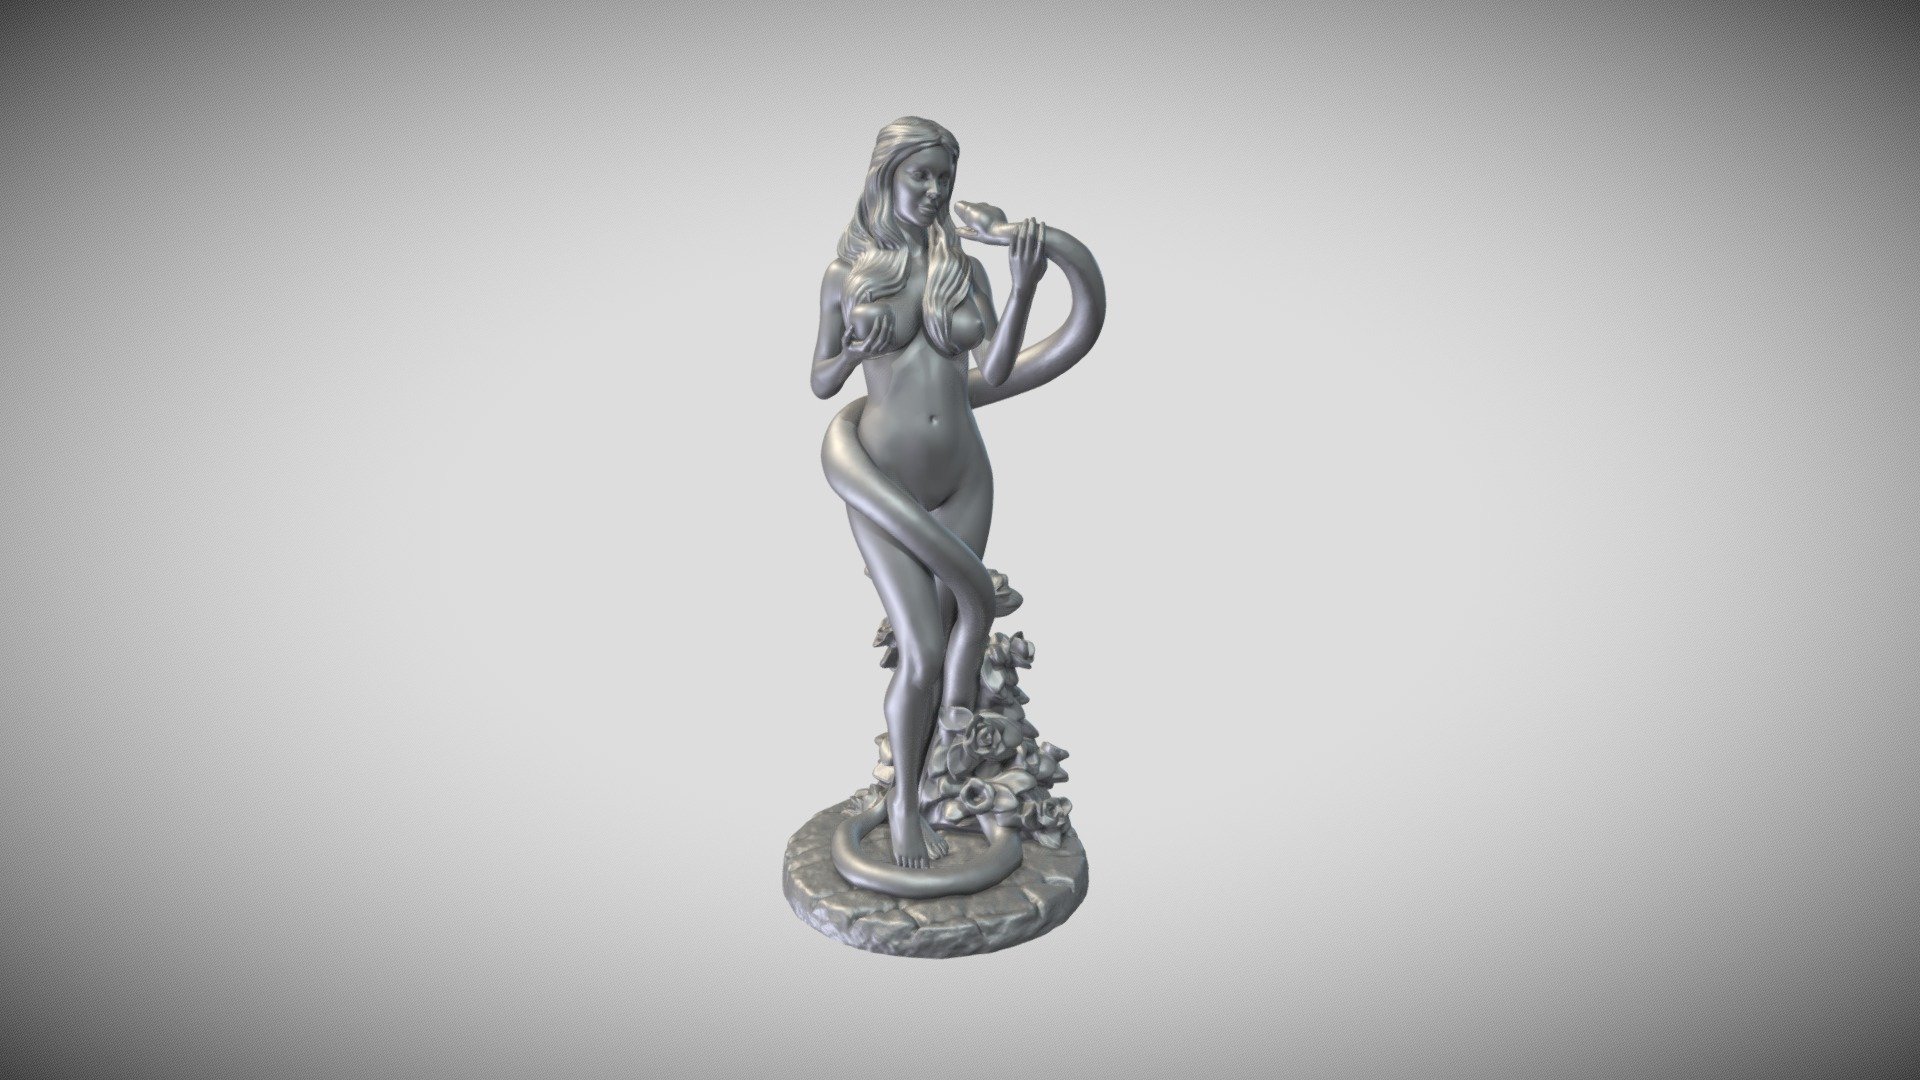 Eva statue 3d Model for 3DPrint - Eva statue 3d Model for 3DPrint - Buy Royalty Free 3D model by abauerenator 3d model